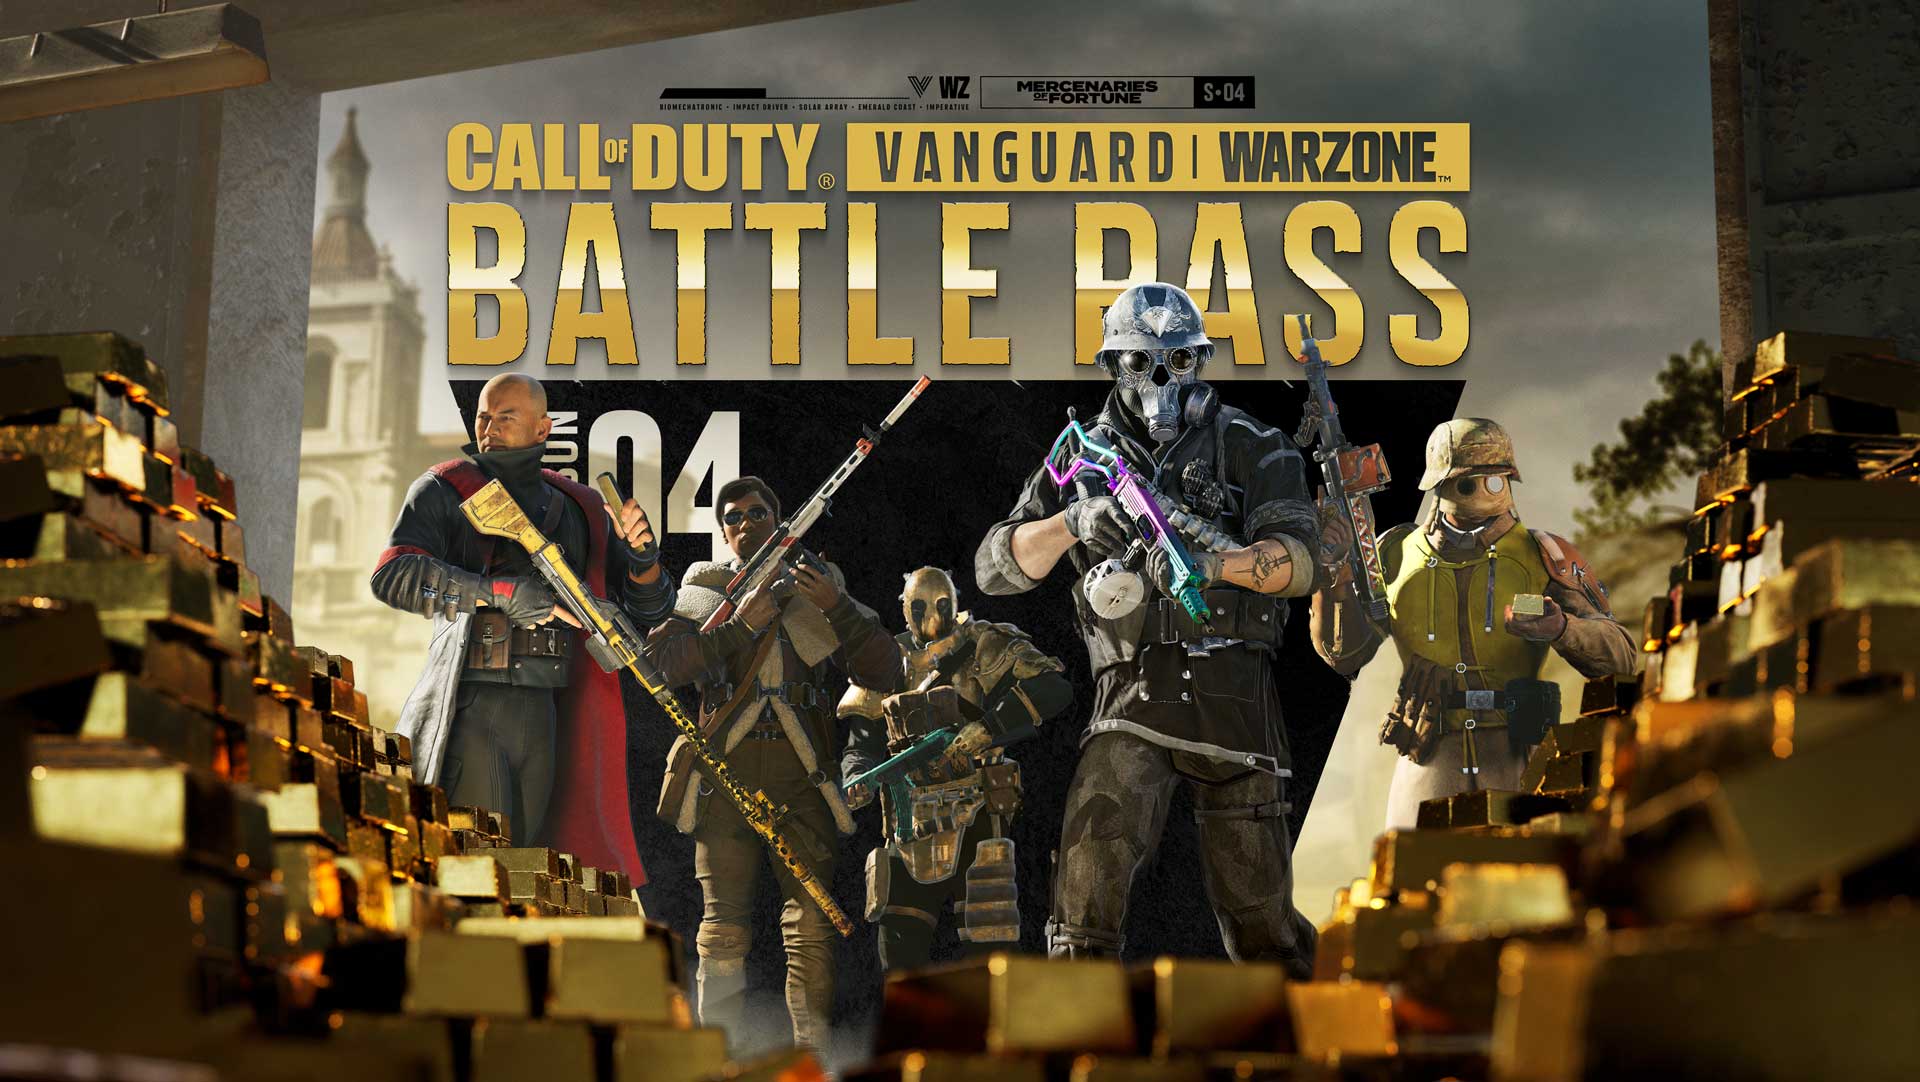 Call of Duty: Vanguard und Warzone – Übersicht zum Battle Pass und den Bundles aus Söldner auf Schatzjagd